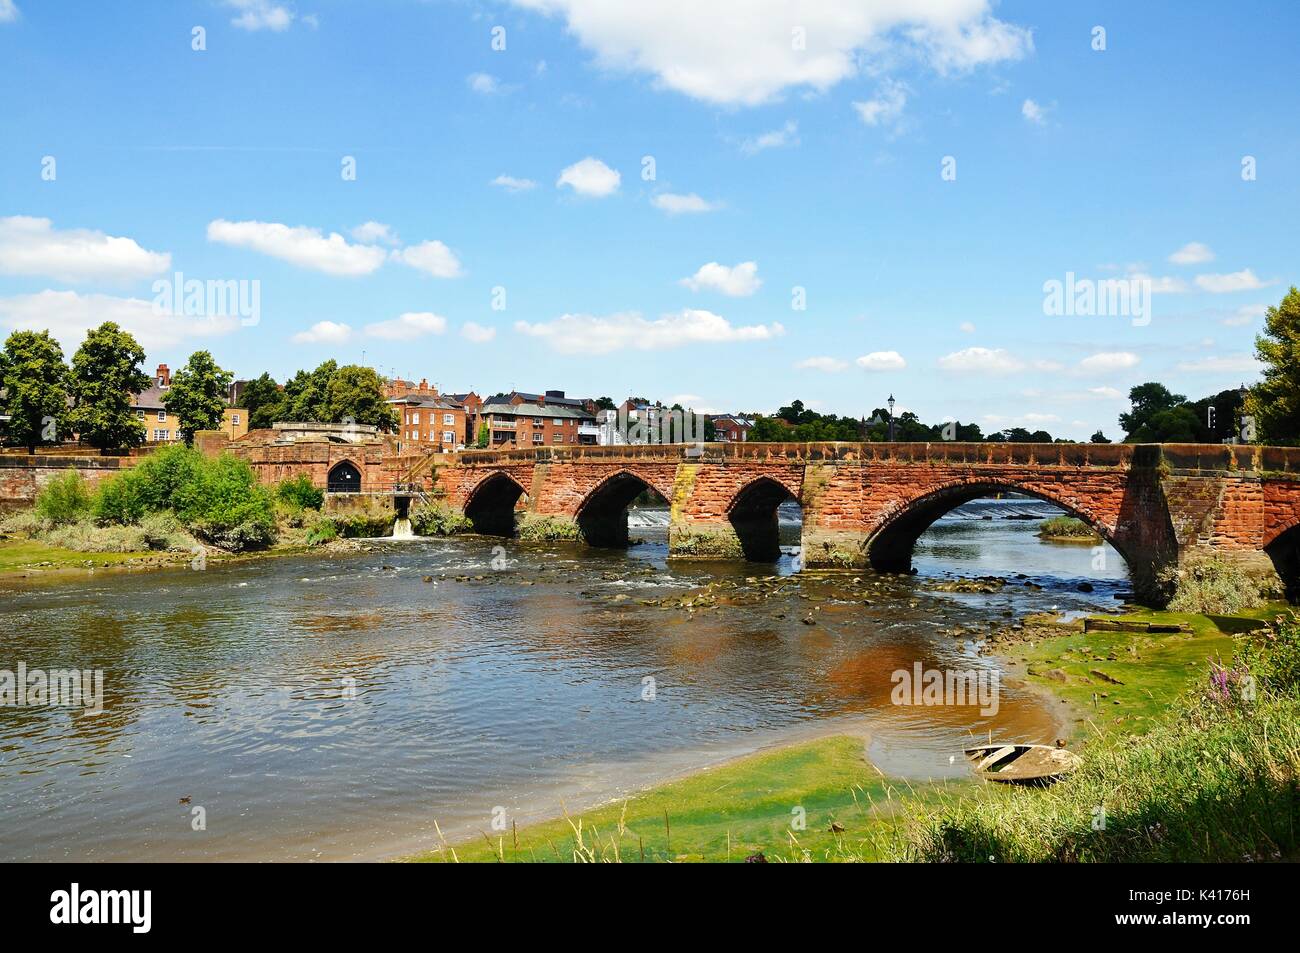 Vista del viejo puente que atraviesa el río Dee Dee, Chester, Cheshire, Inglaterra, Reino Unido, Europa Occidental. Foto de stock